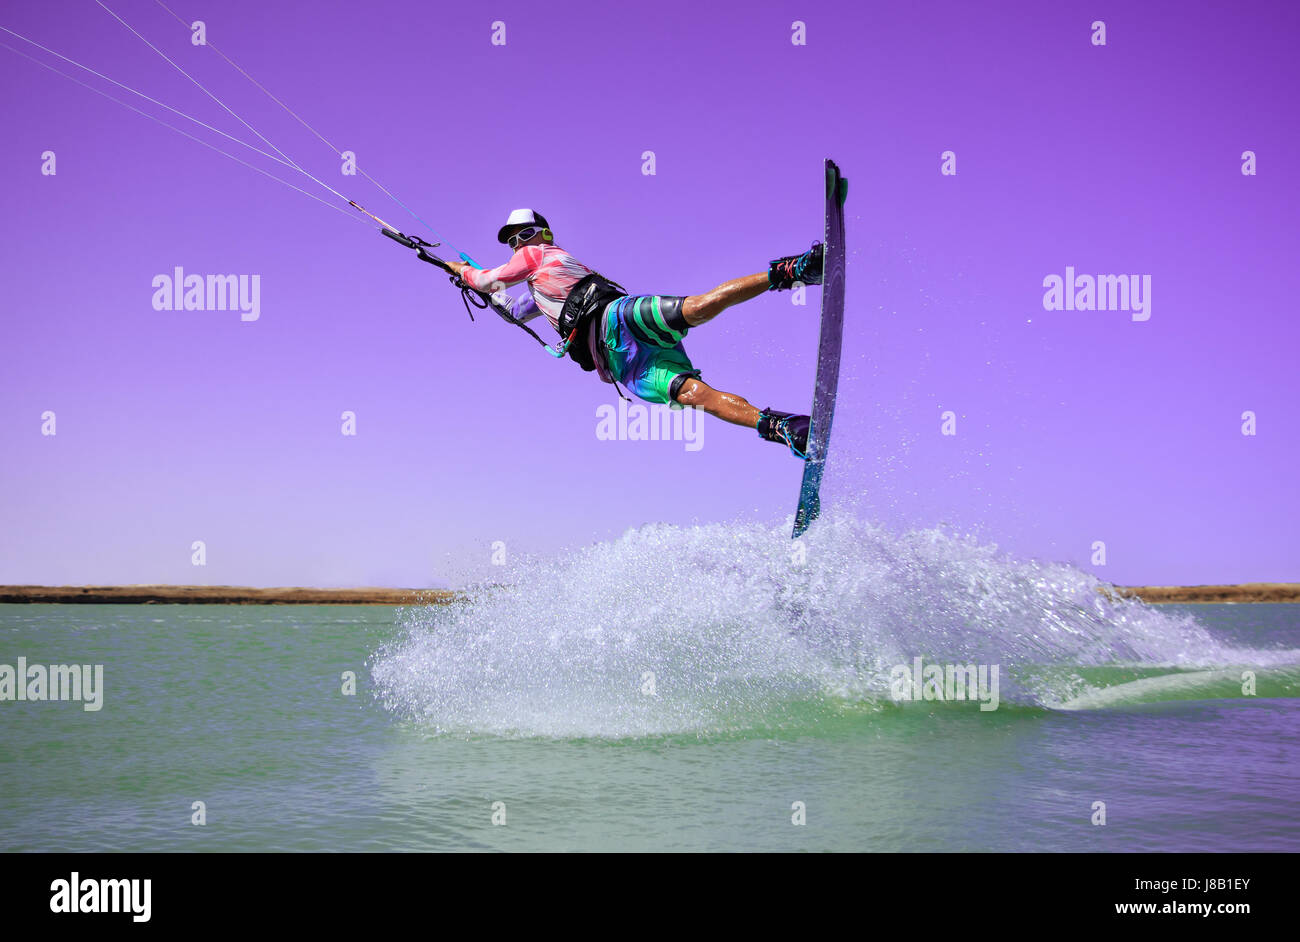 Professionellen Kite boarding Fahrer Sportler springt hoch Akrobatik Kiteboarding raley Trick mit riesigen Spritzwasser. Freizeitbeschäftigung und extreme Stockfoto